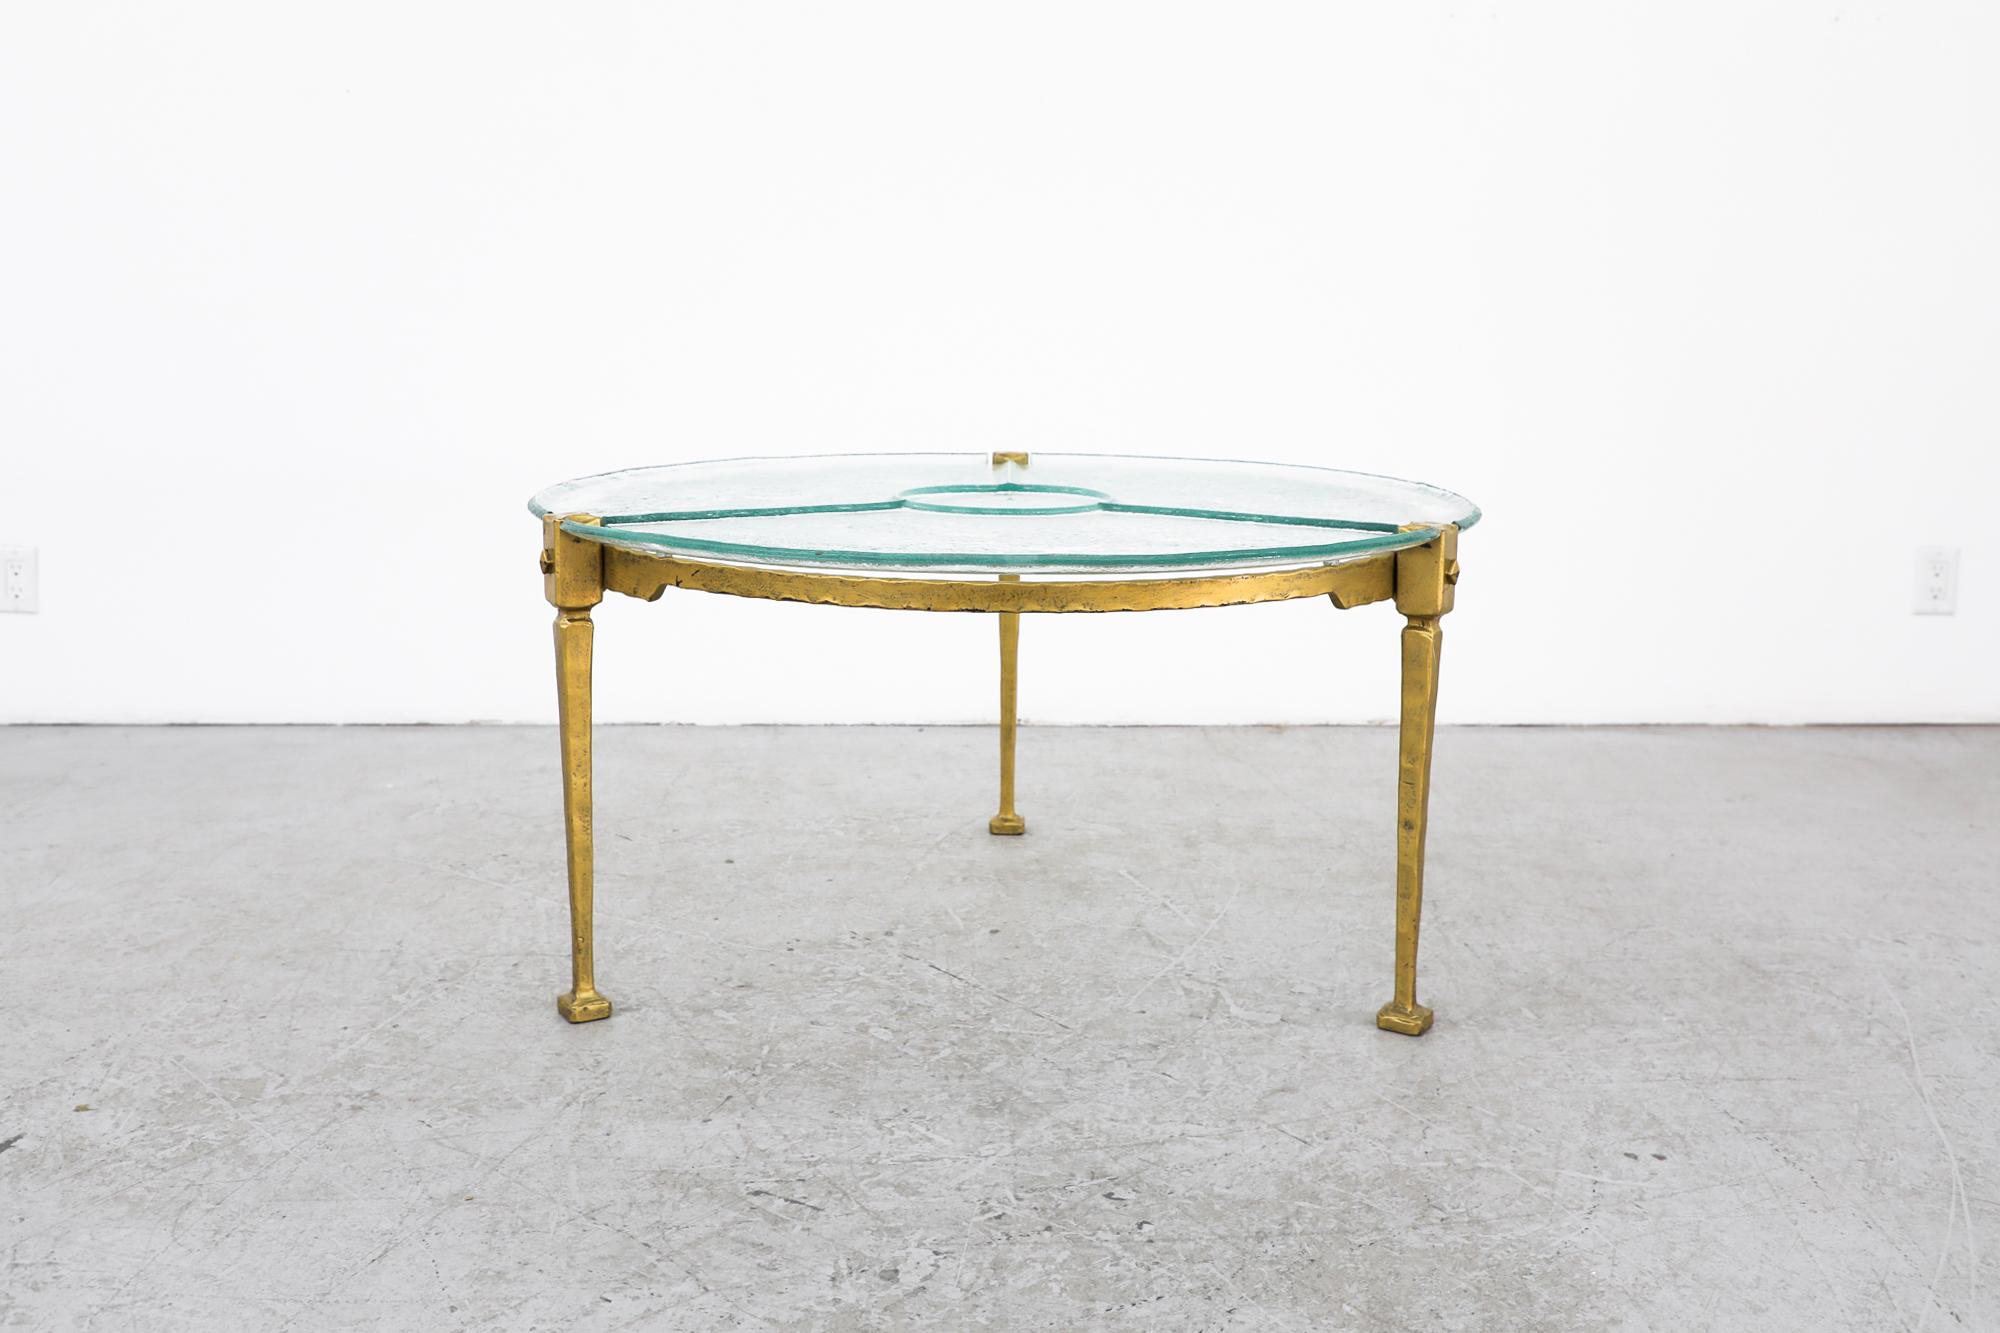 Superbe table basse ou table d'appoint Brutalist ronde émaillée avec plateau en verre texturé affaissé et structure en métal émaillé doré. Conçu par le dessinateur et sculpteur allemand multidisciplinaire Lothar Klute (1946). En état d'origine, avec